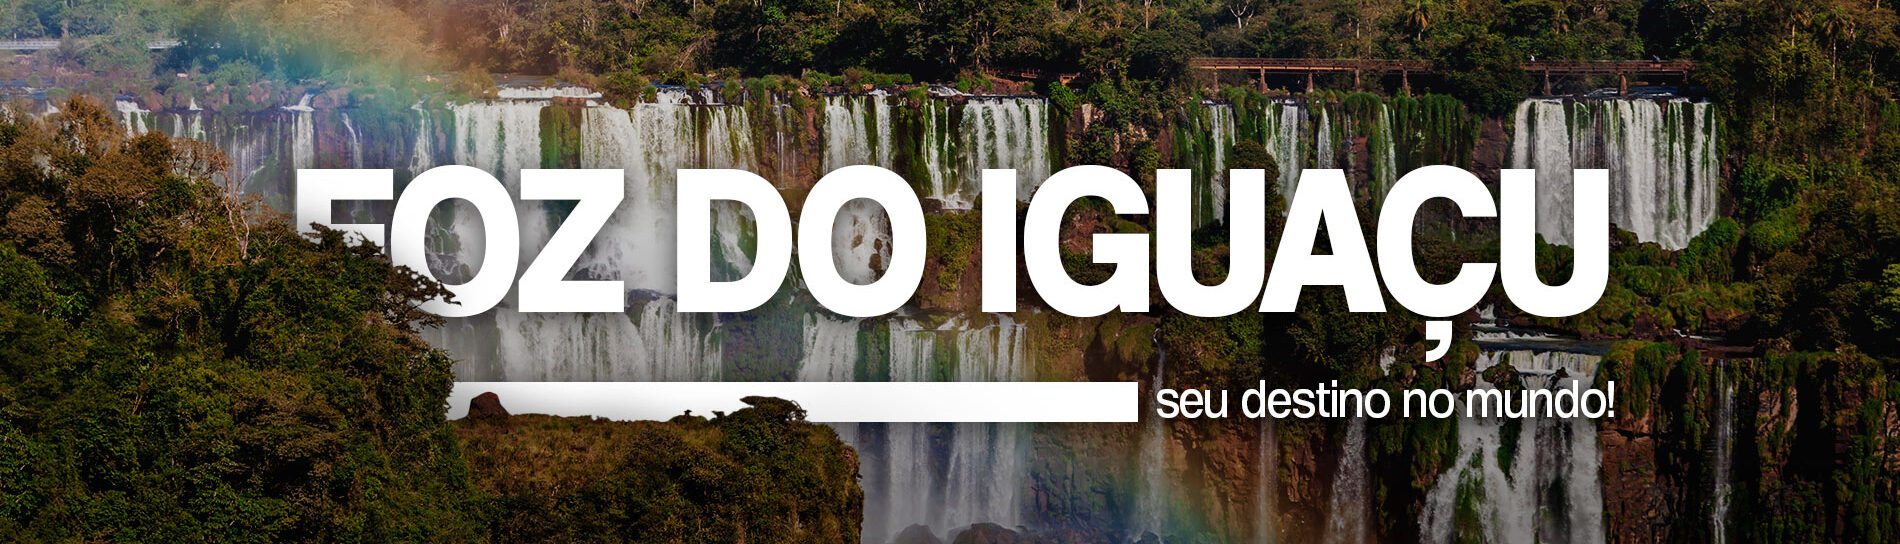 Foz do Iguaçu, seu destino no mundo!